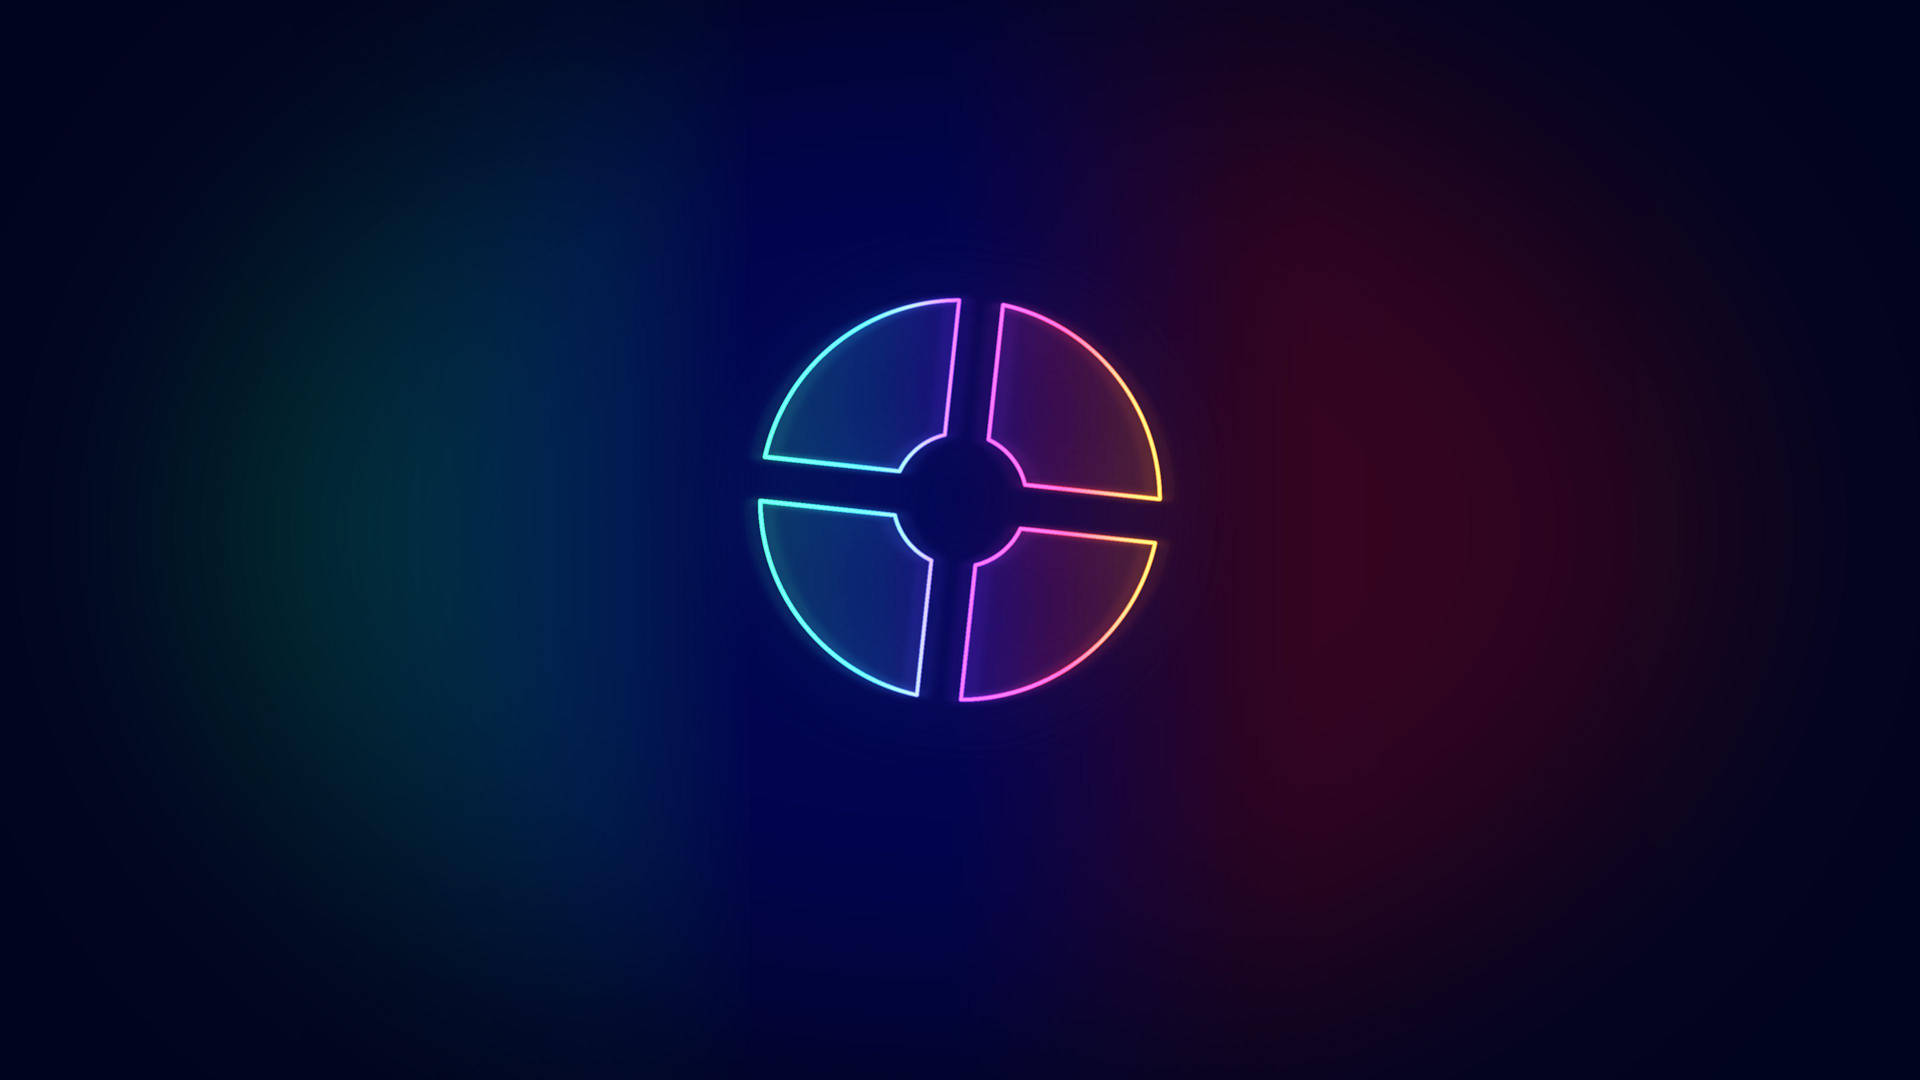 Neonkreis-logo Auf Dunklem Hintergrund Wallpaper